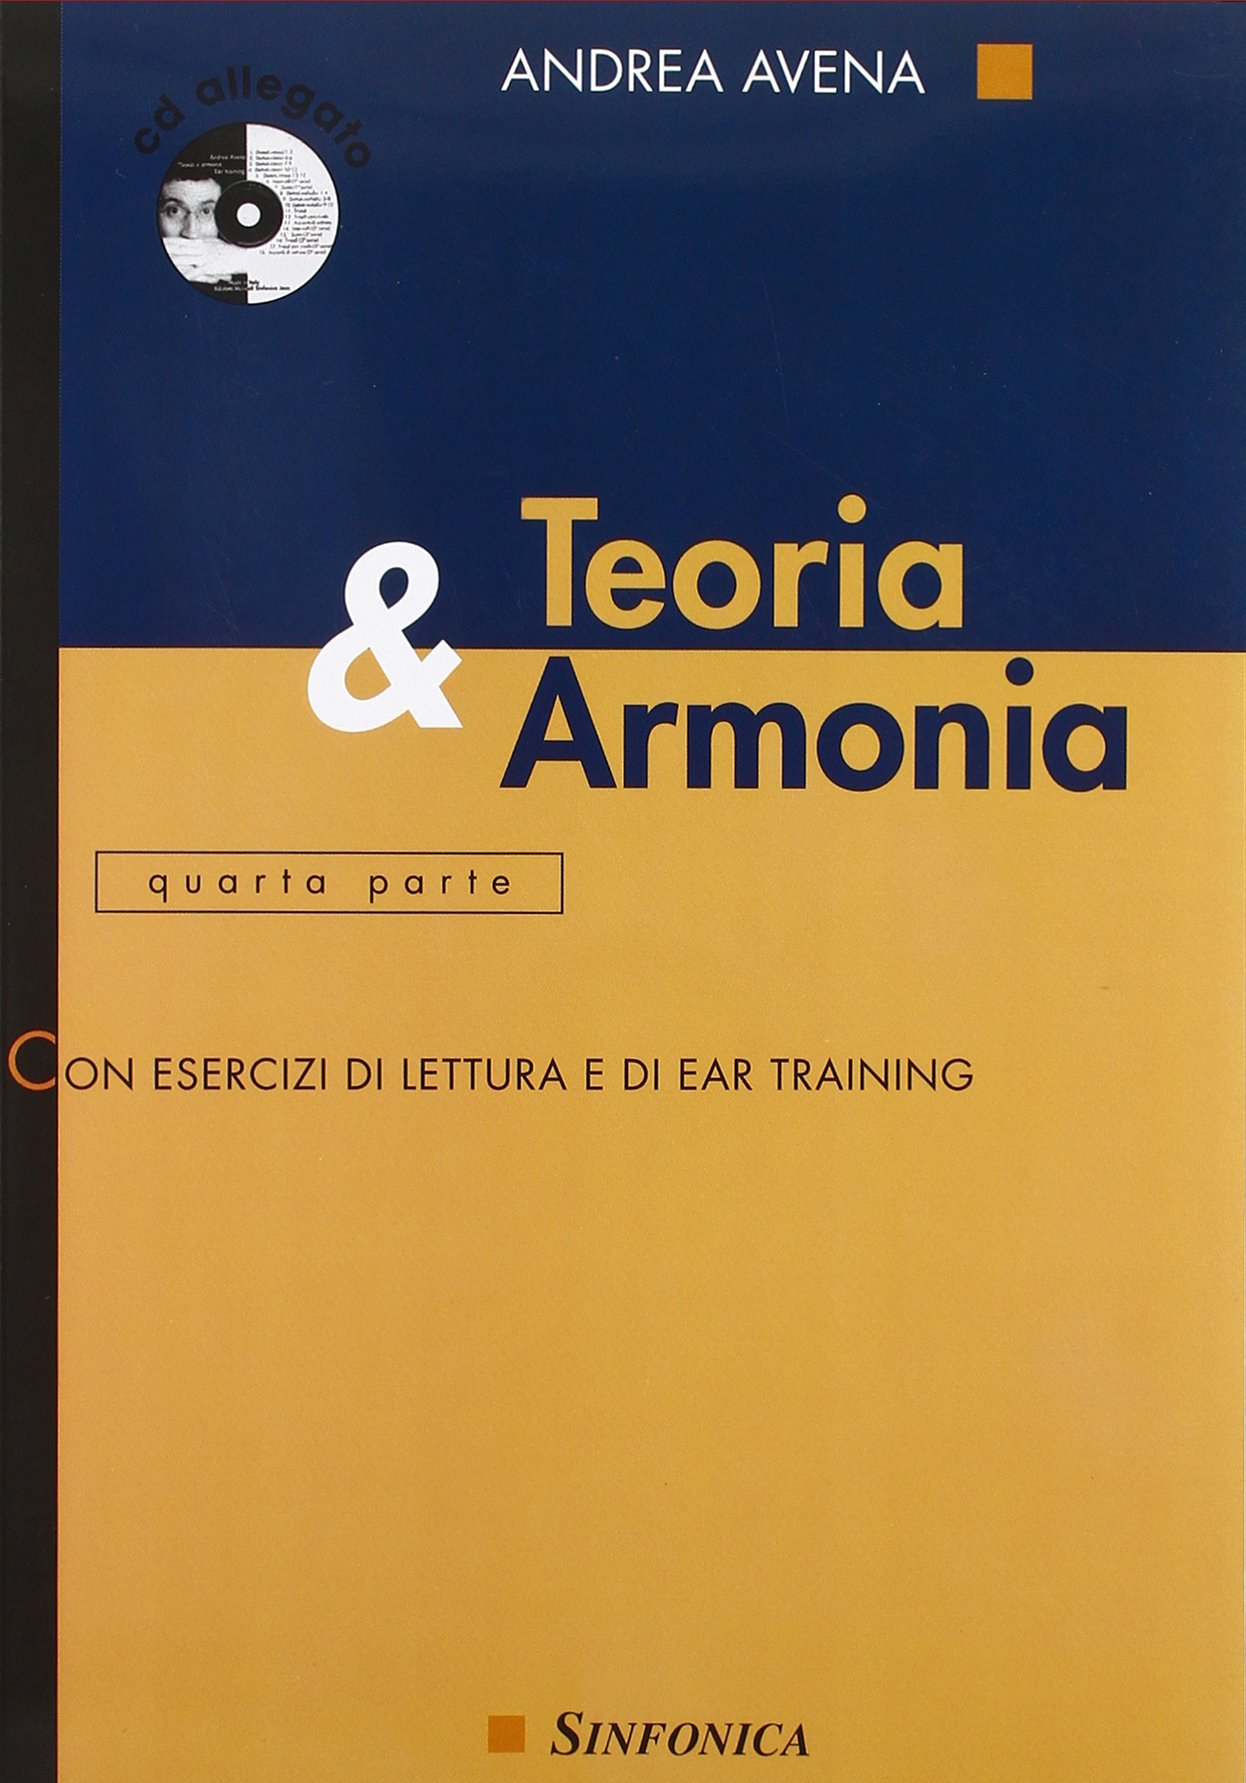 Libri Andrea Avena - Teoria & Armonia. Con CD Audio NUOVO SIGILLATO, EDIZIONE DEL 07/01/2015 SUBITO DISPONIBILE